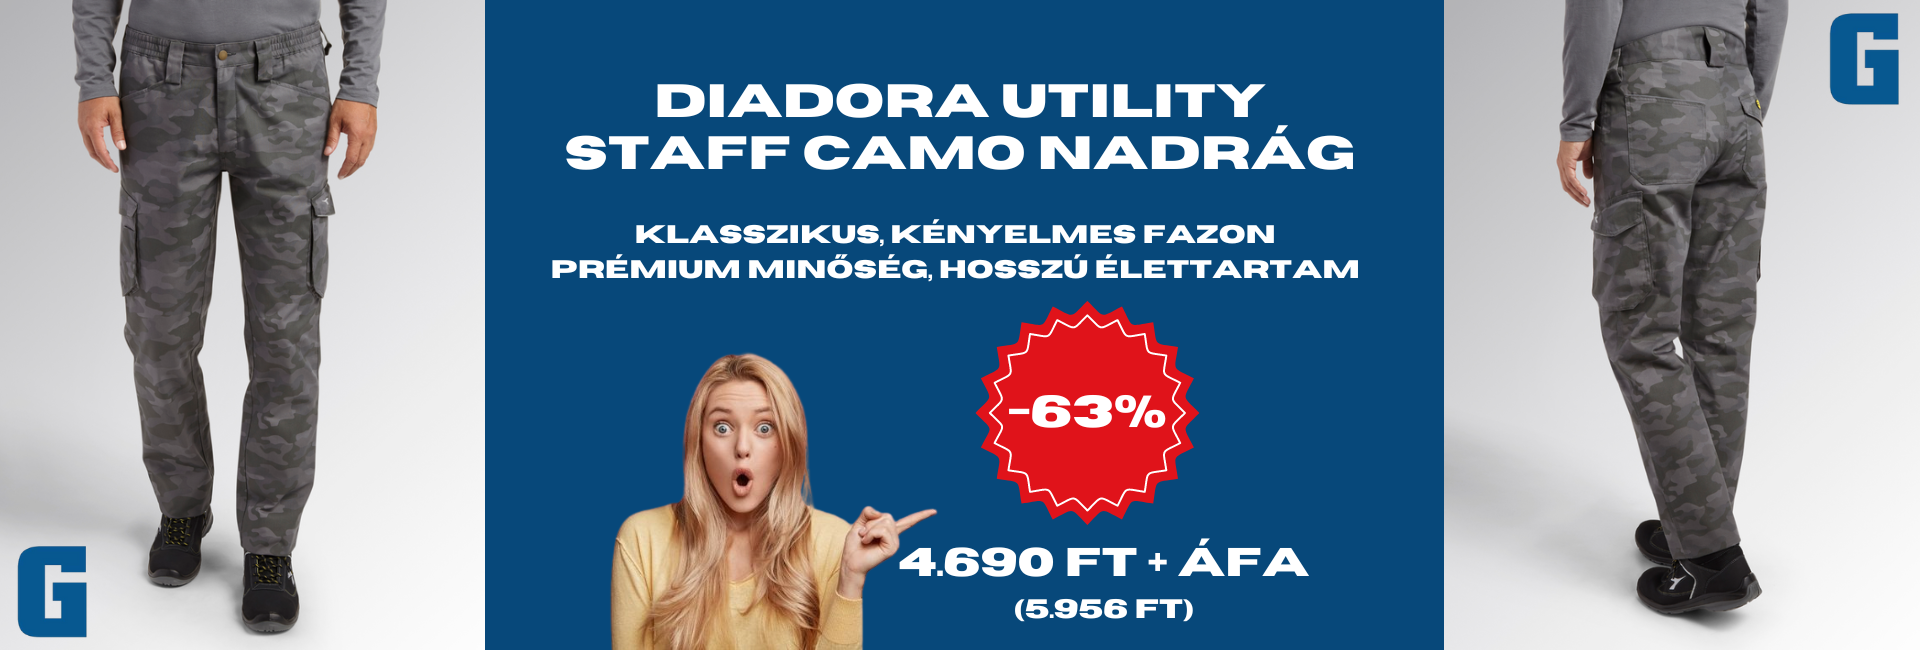 diadora-utility-staff-camo-nadrag-grandis-hu